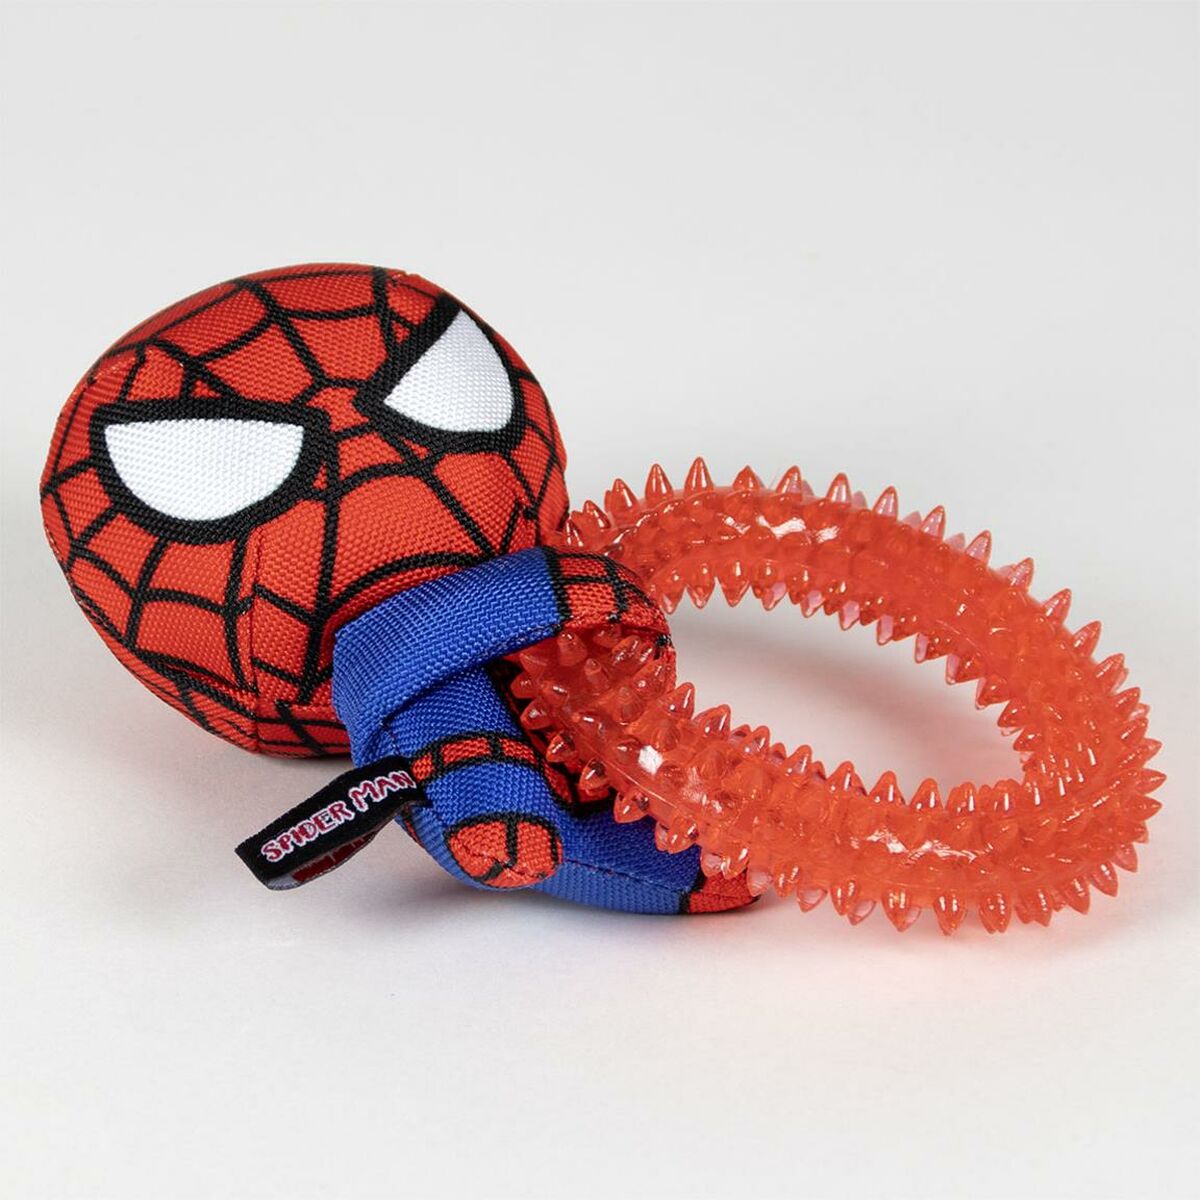 Zabawka dla psów Spiderman   Czerwony 100 % poliester